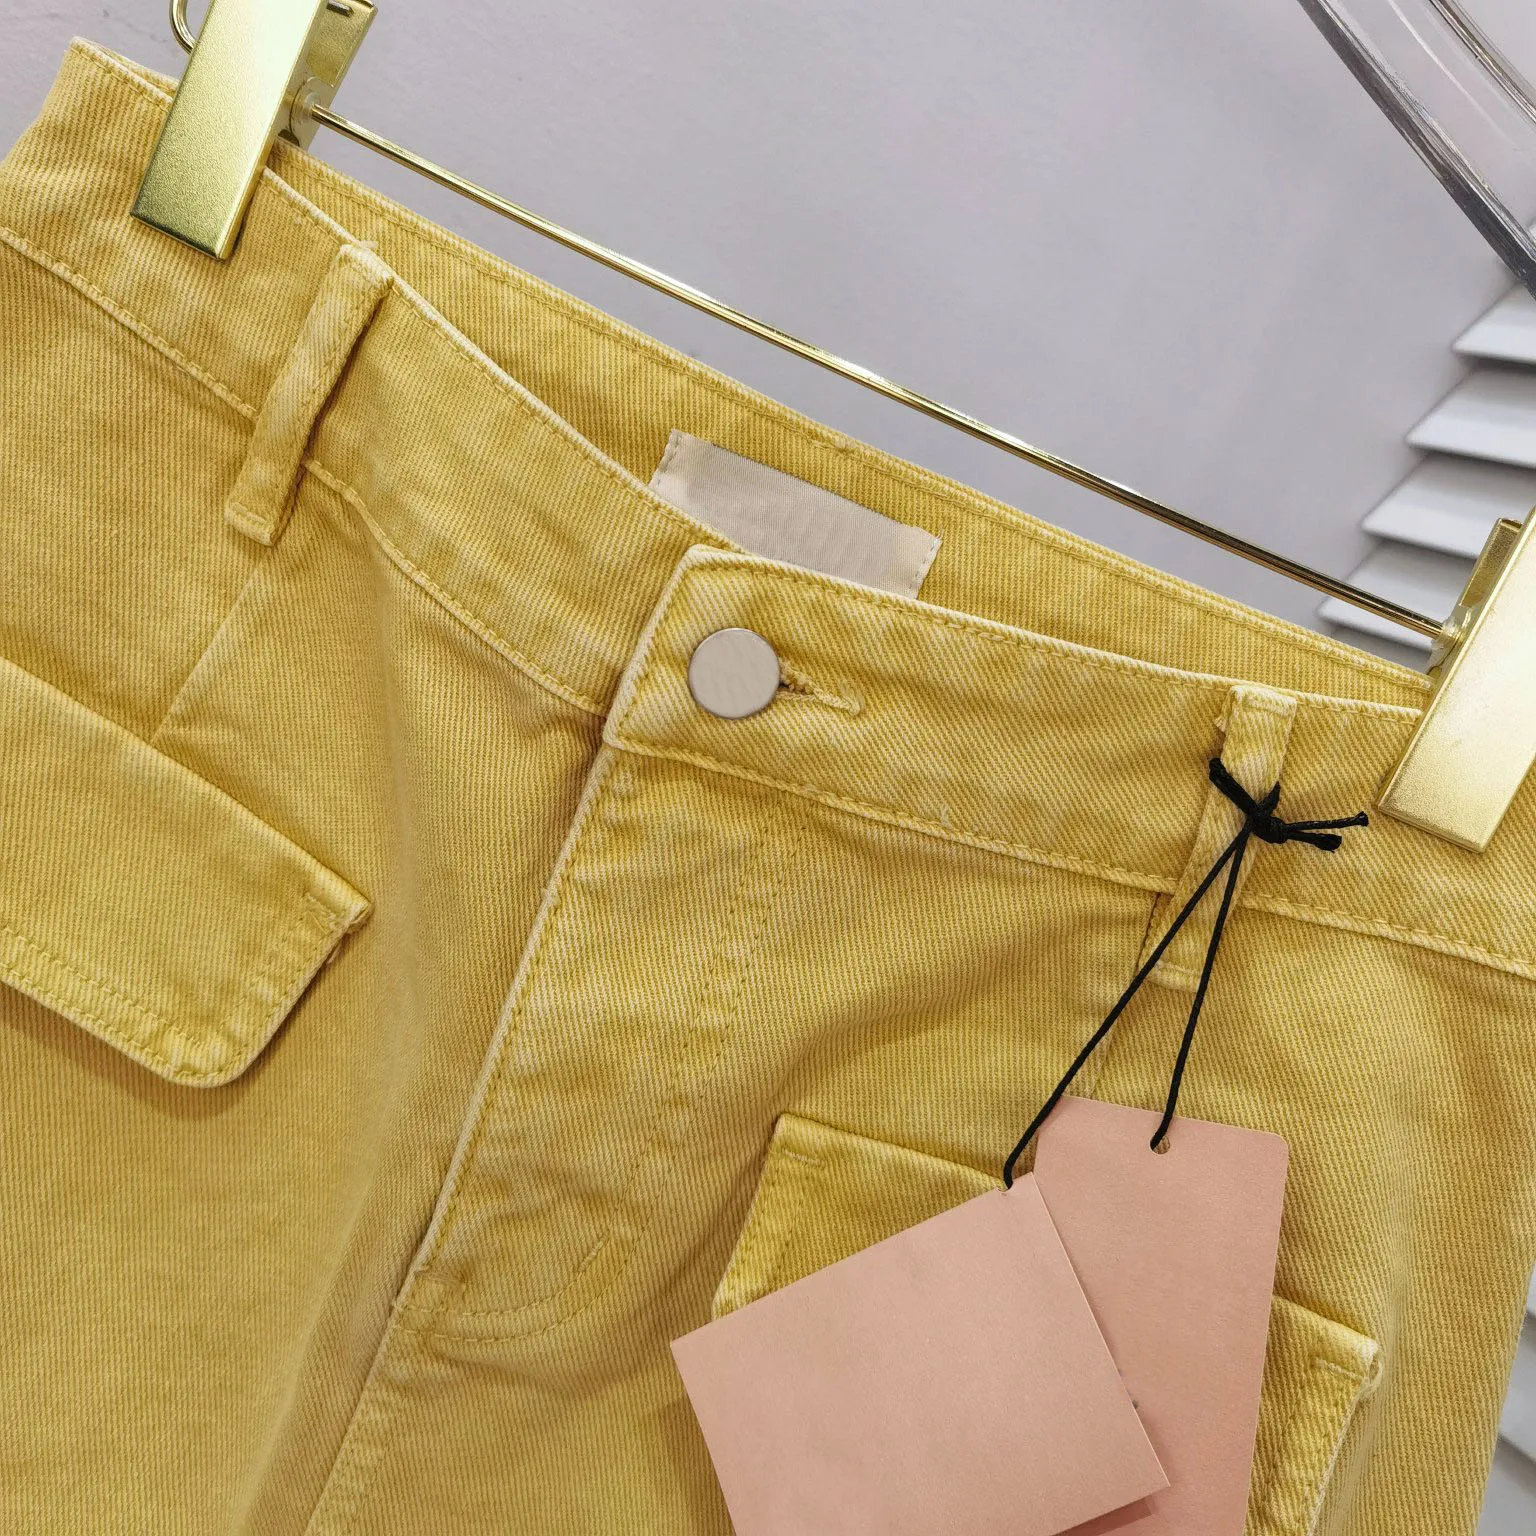 Новая желтая джинсовая юбка наполовину, дизайн поддельного кармана спереди, дизайн поддельных двух маленьких шлейфов юбки, досуг для снижения возраста . ' - ' . 2